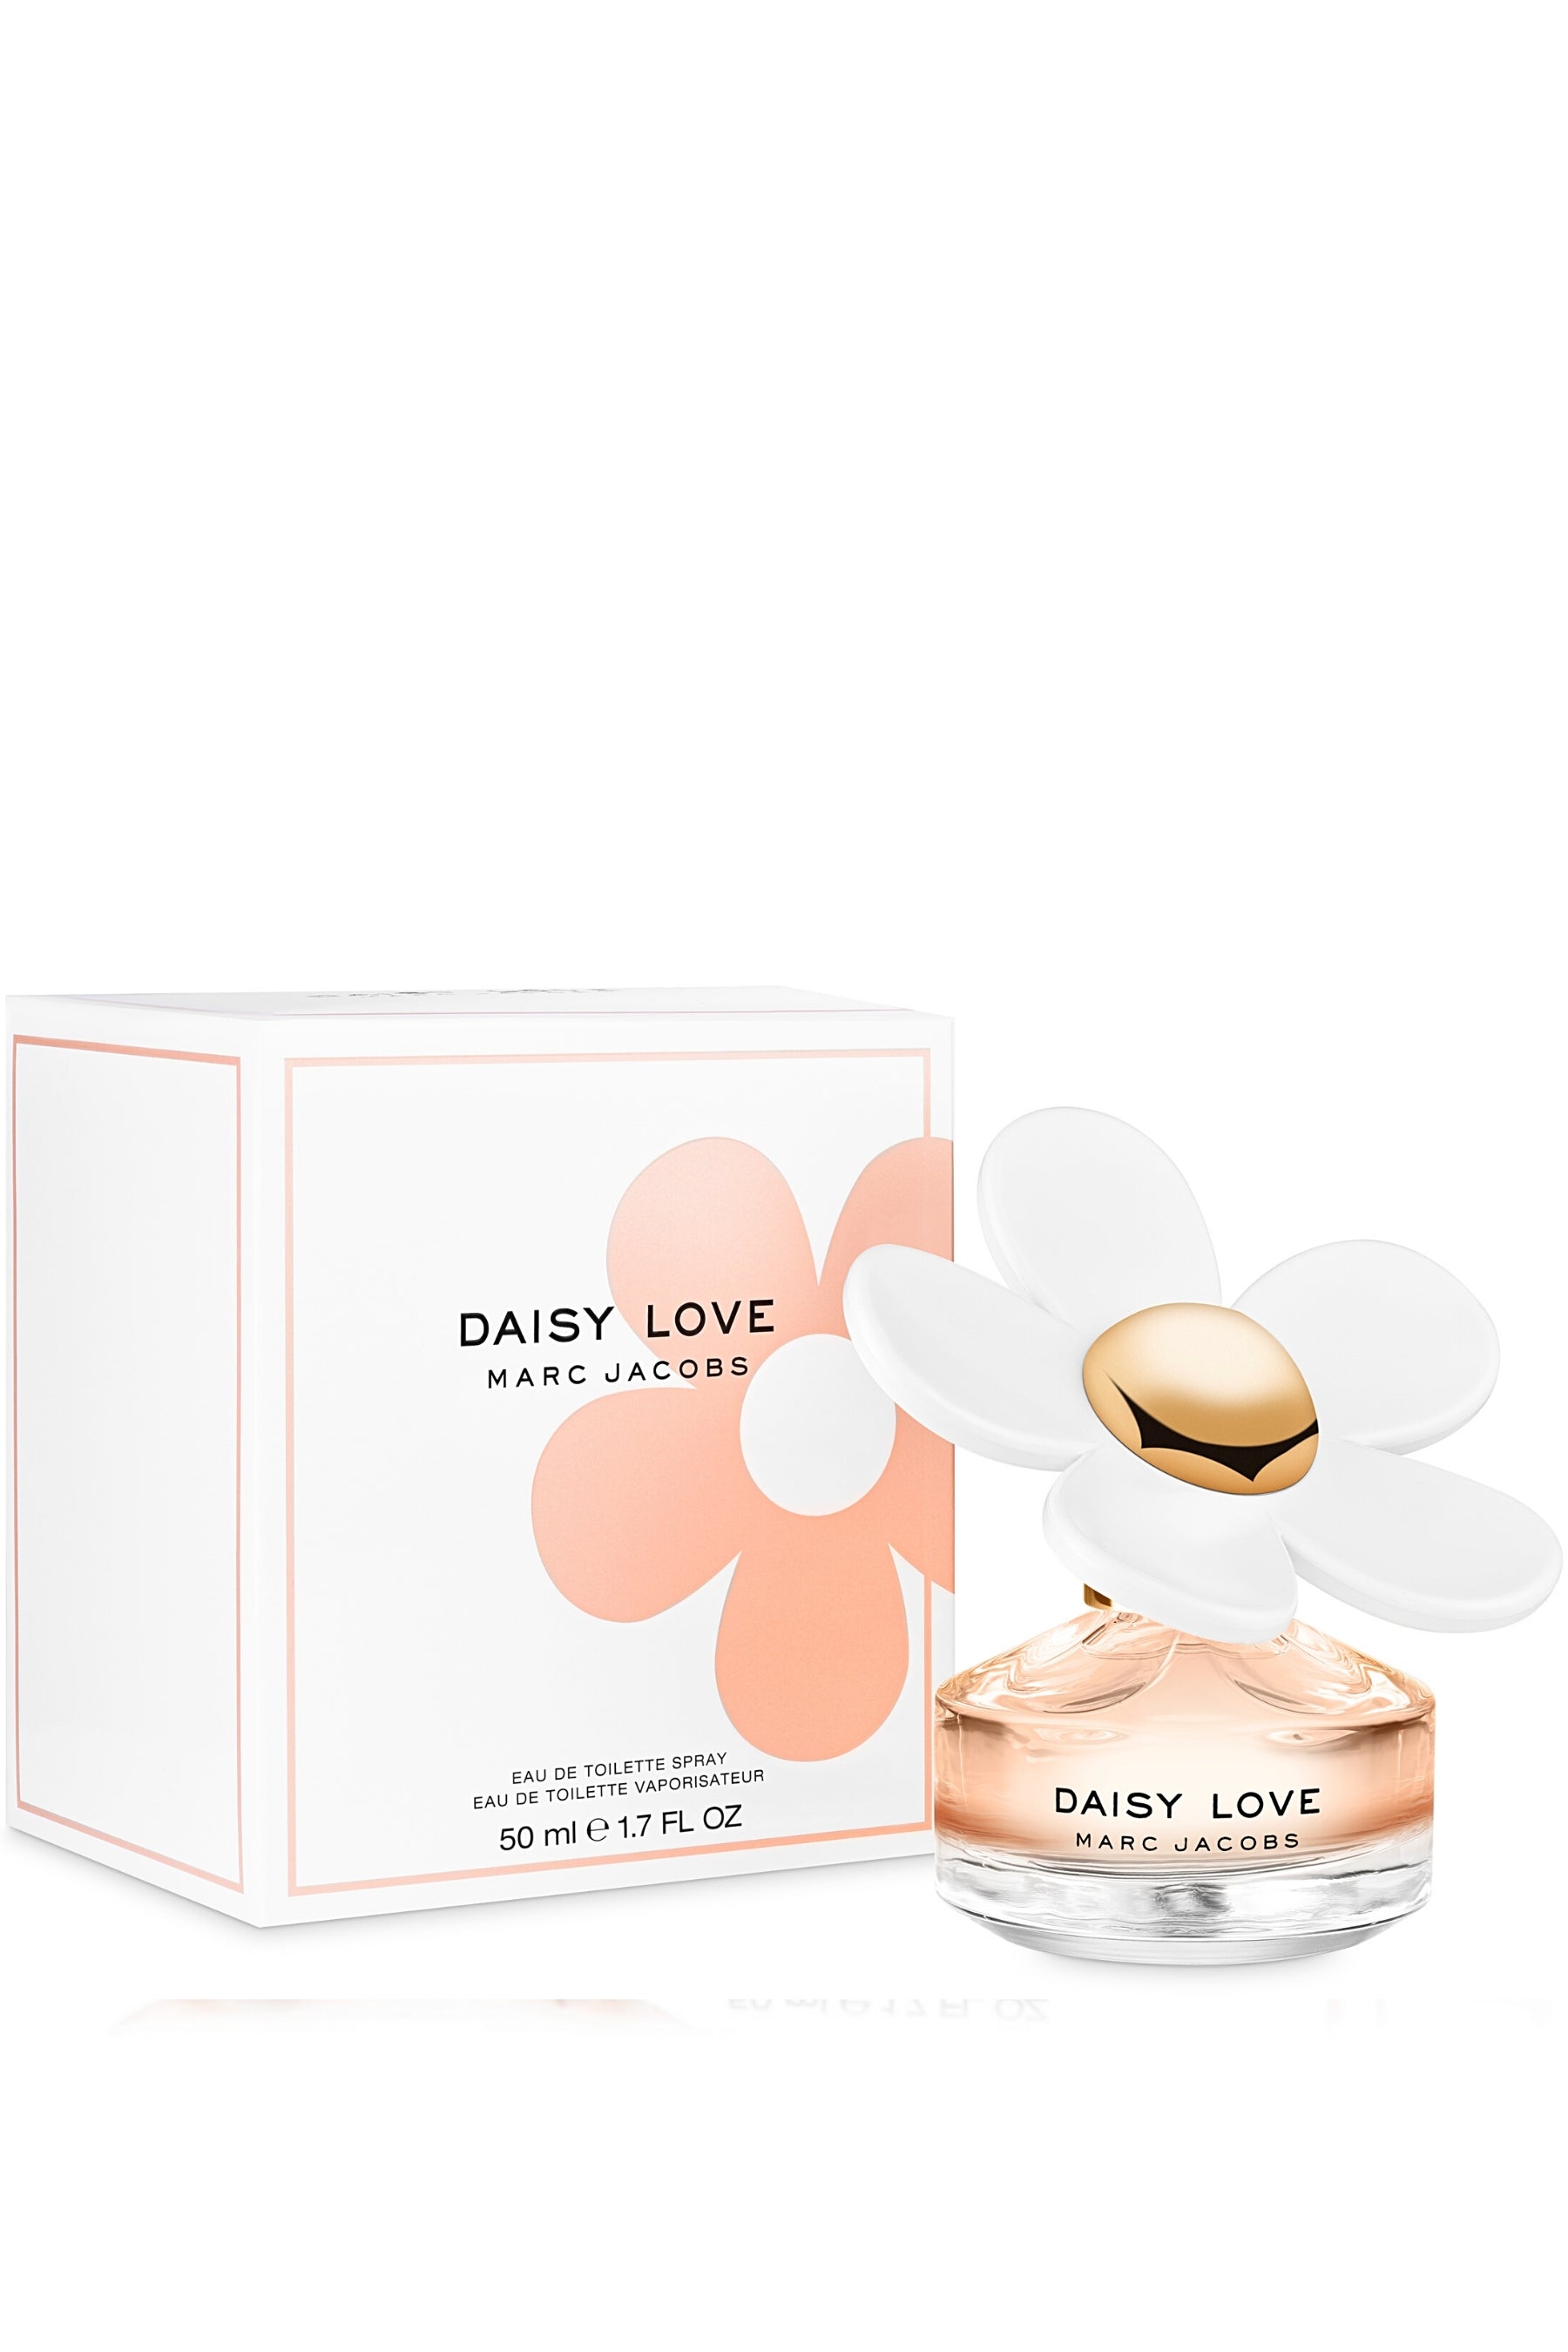 Daisy Love Perfume, Marc Jacobs